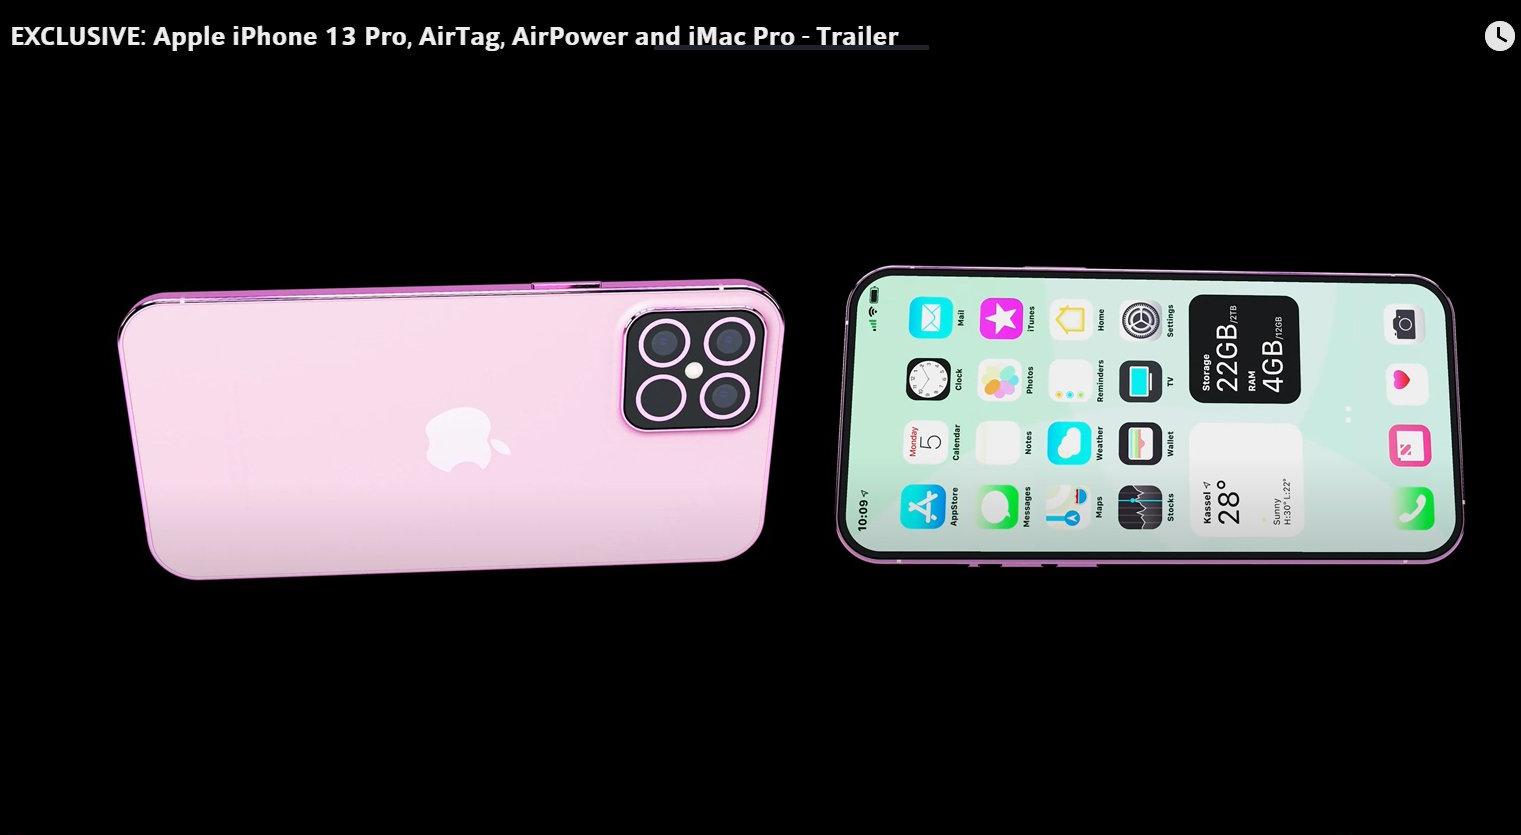 Concept iPhone màu hồng bắt mắt khiến dân tình phải đứng ngồi không yên.